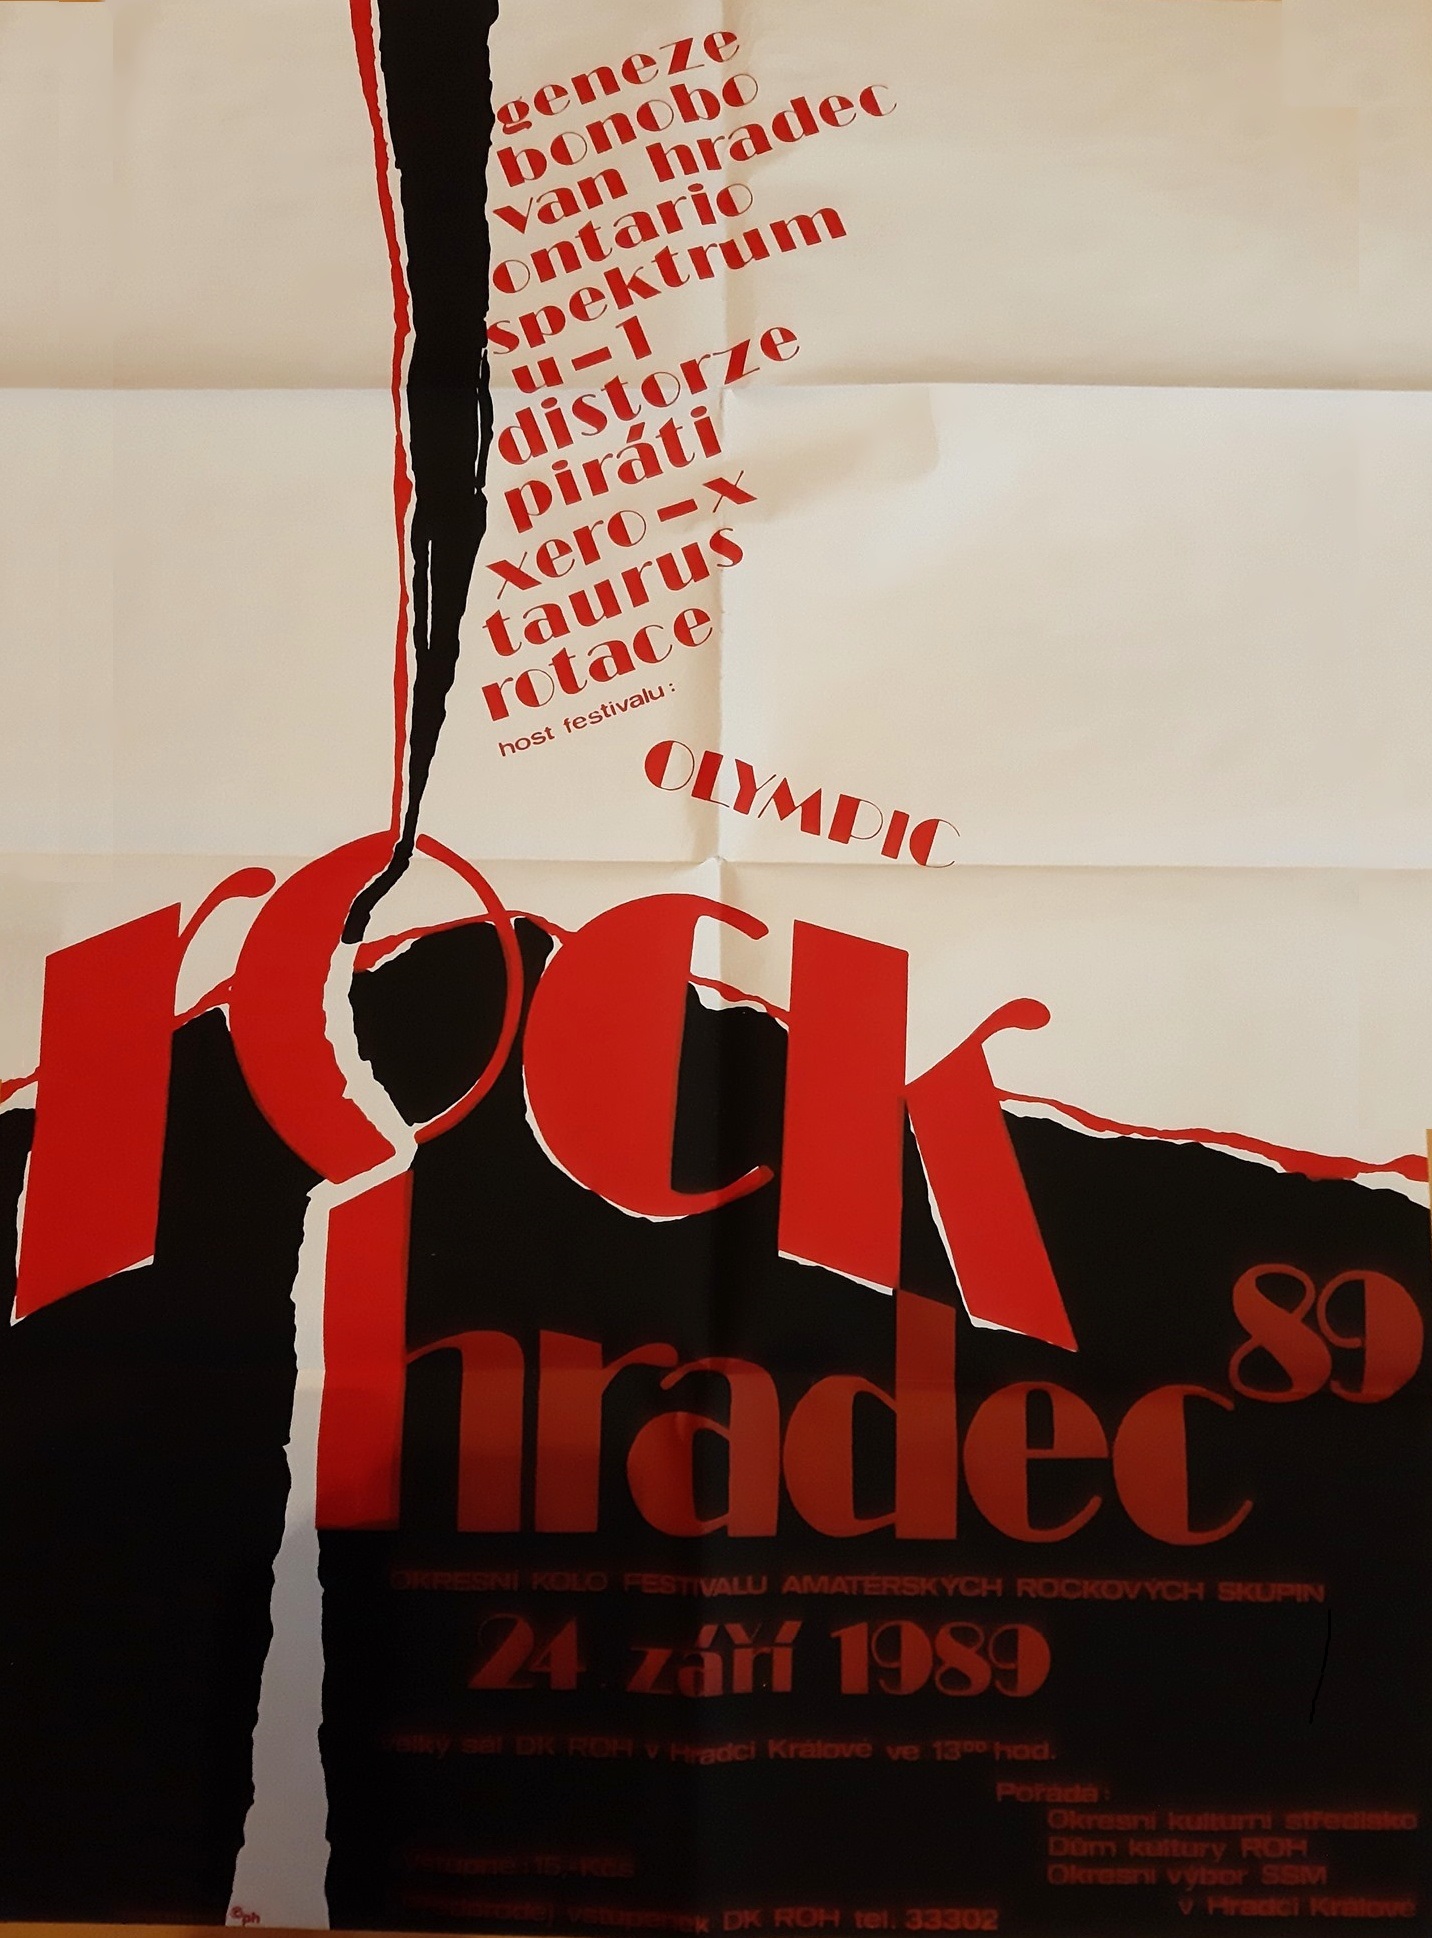 1989-09-24 ROTACE - HK Strelak plakat